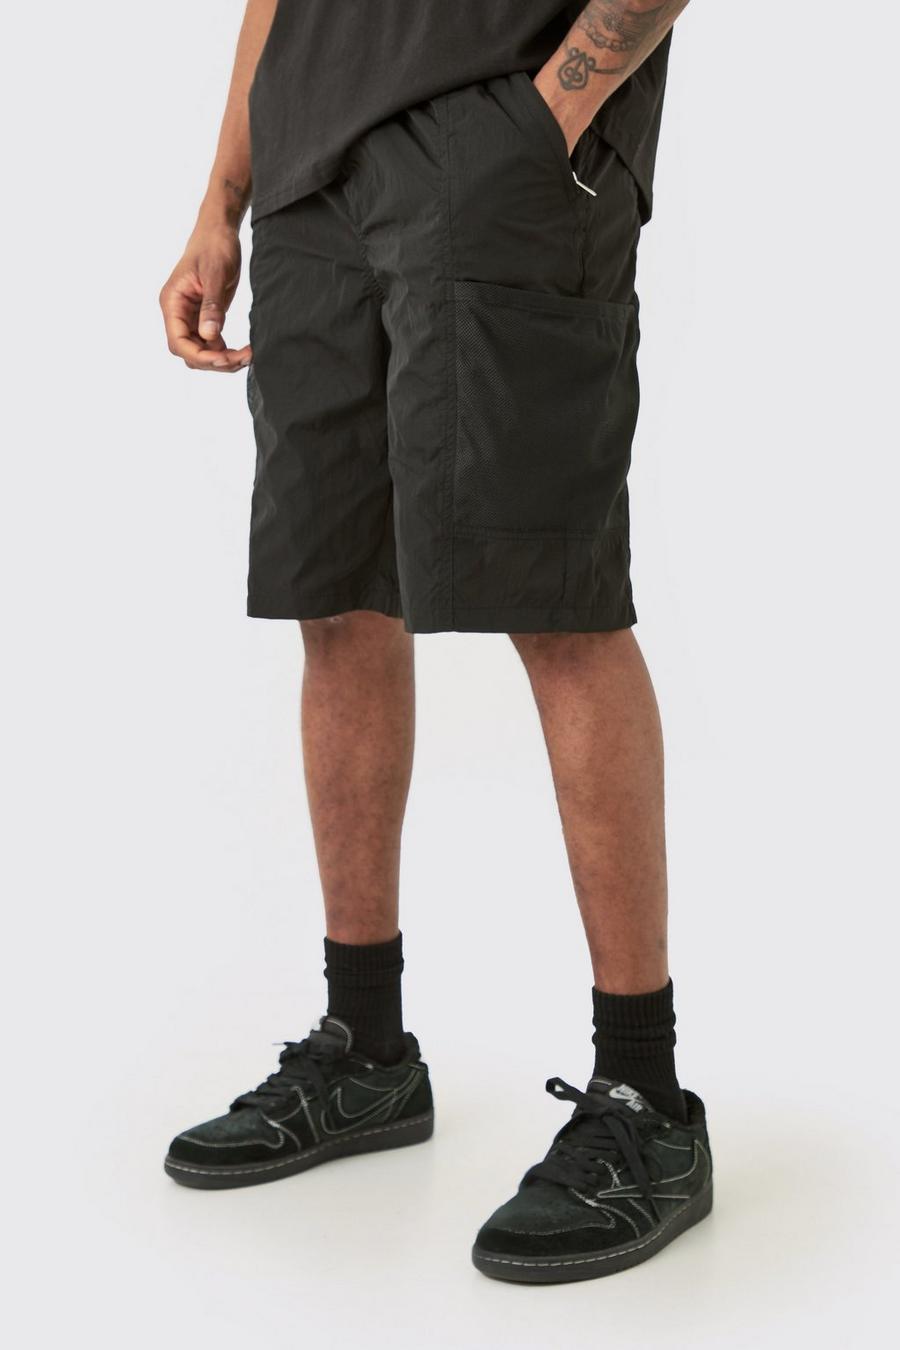 Pantalón corto Tall utilitario de malla con cintura elástica y bolsillos, Black